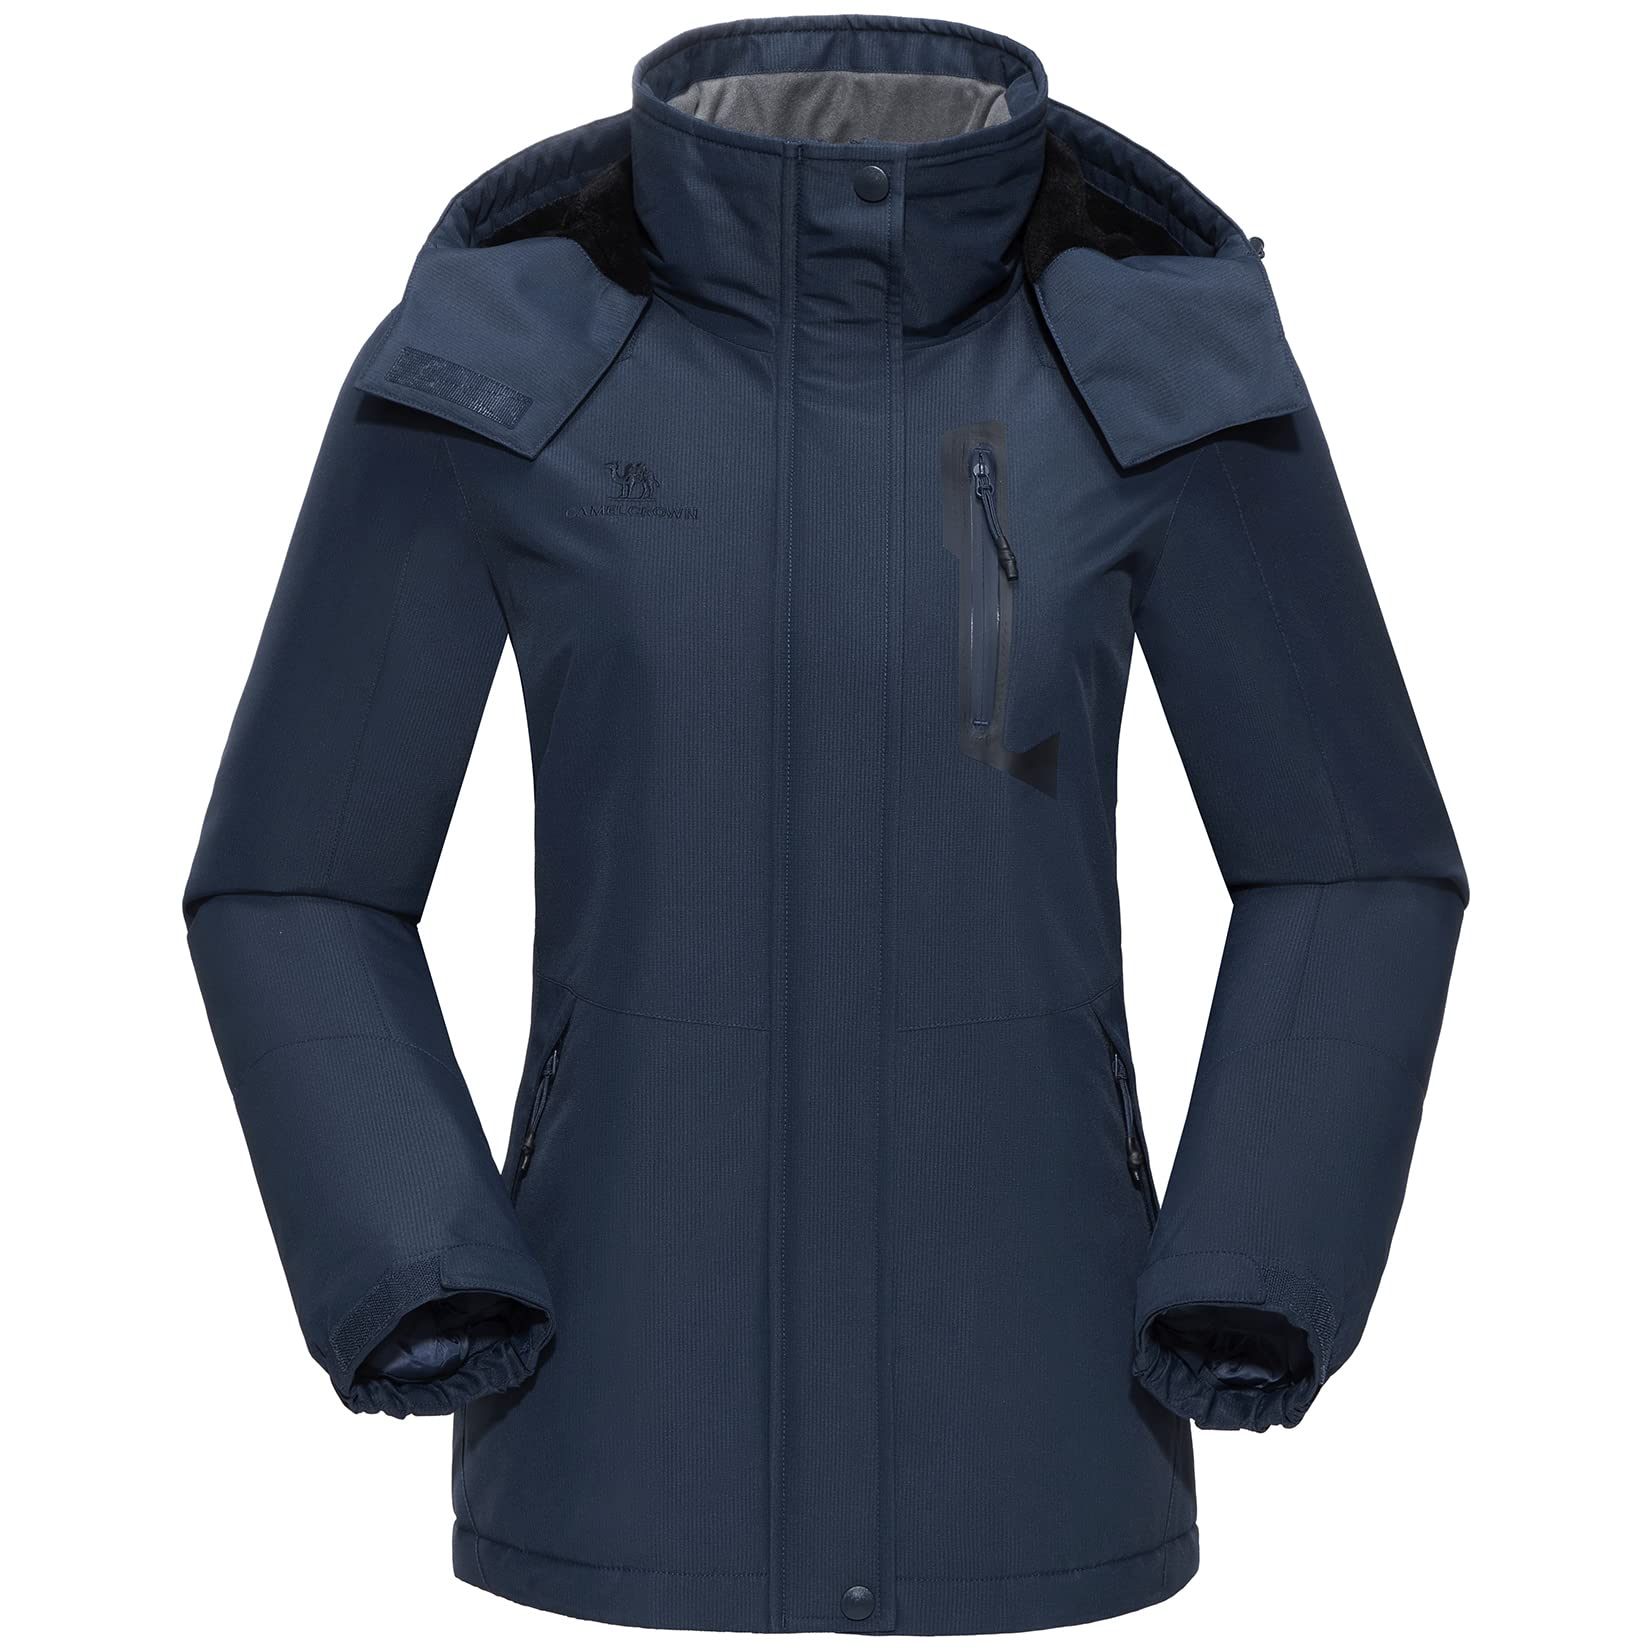 Women's Ski & Snowboard Jackets, Raincoats, & Vests